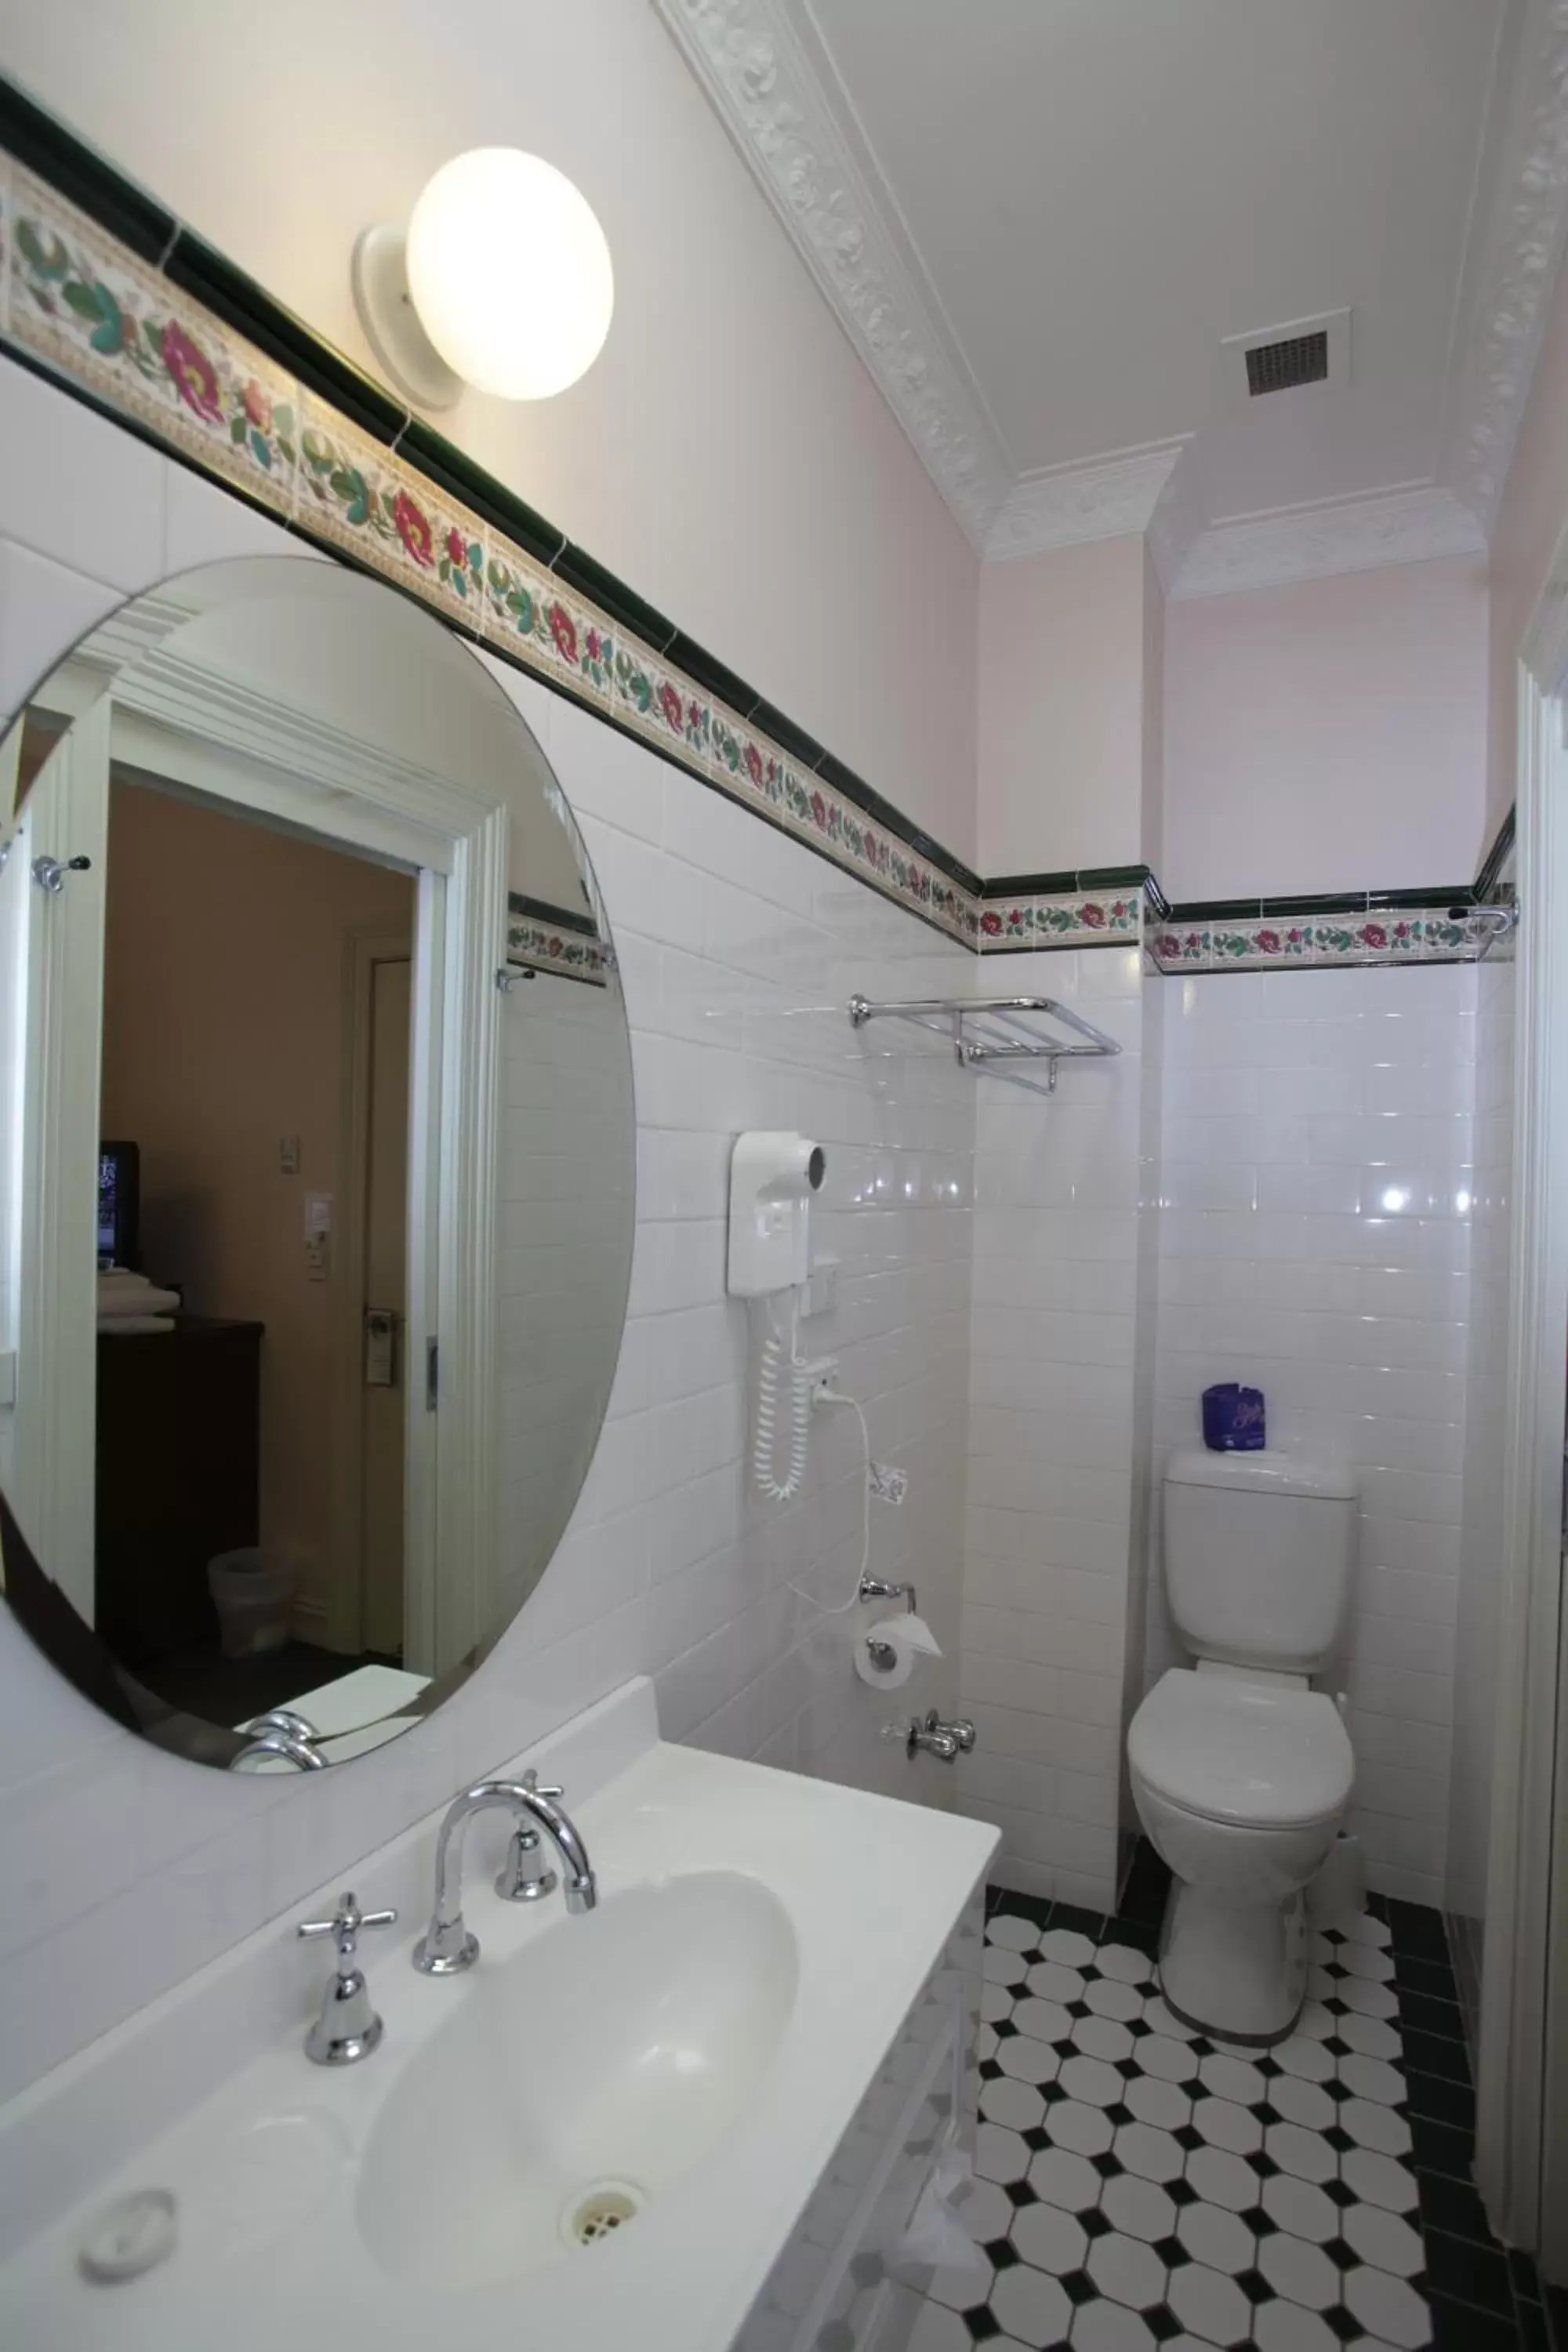 Bathroom in Palais Royale